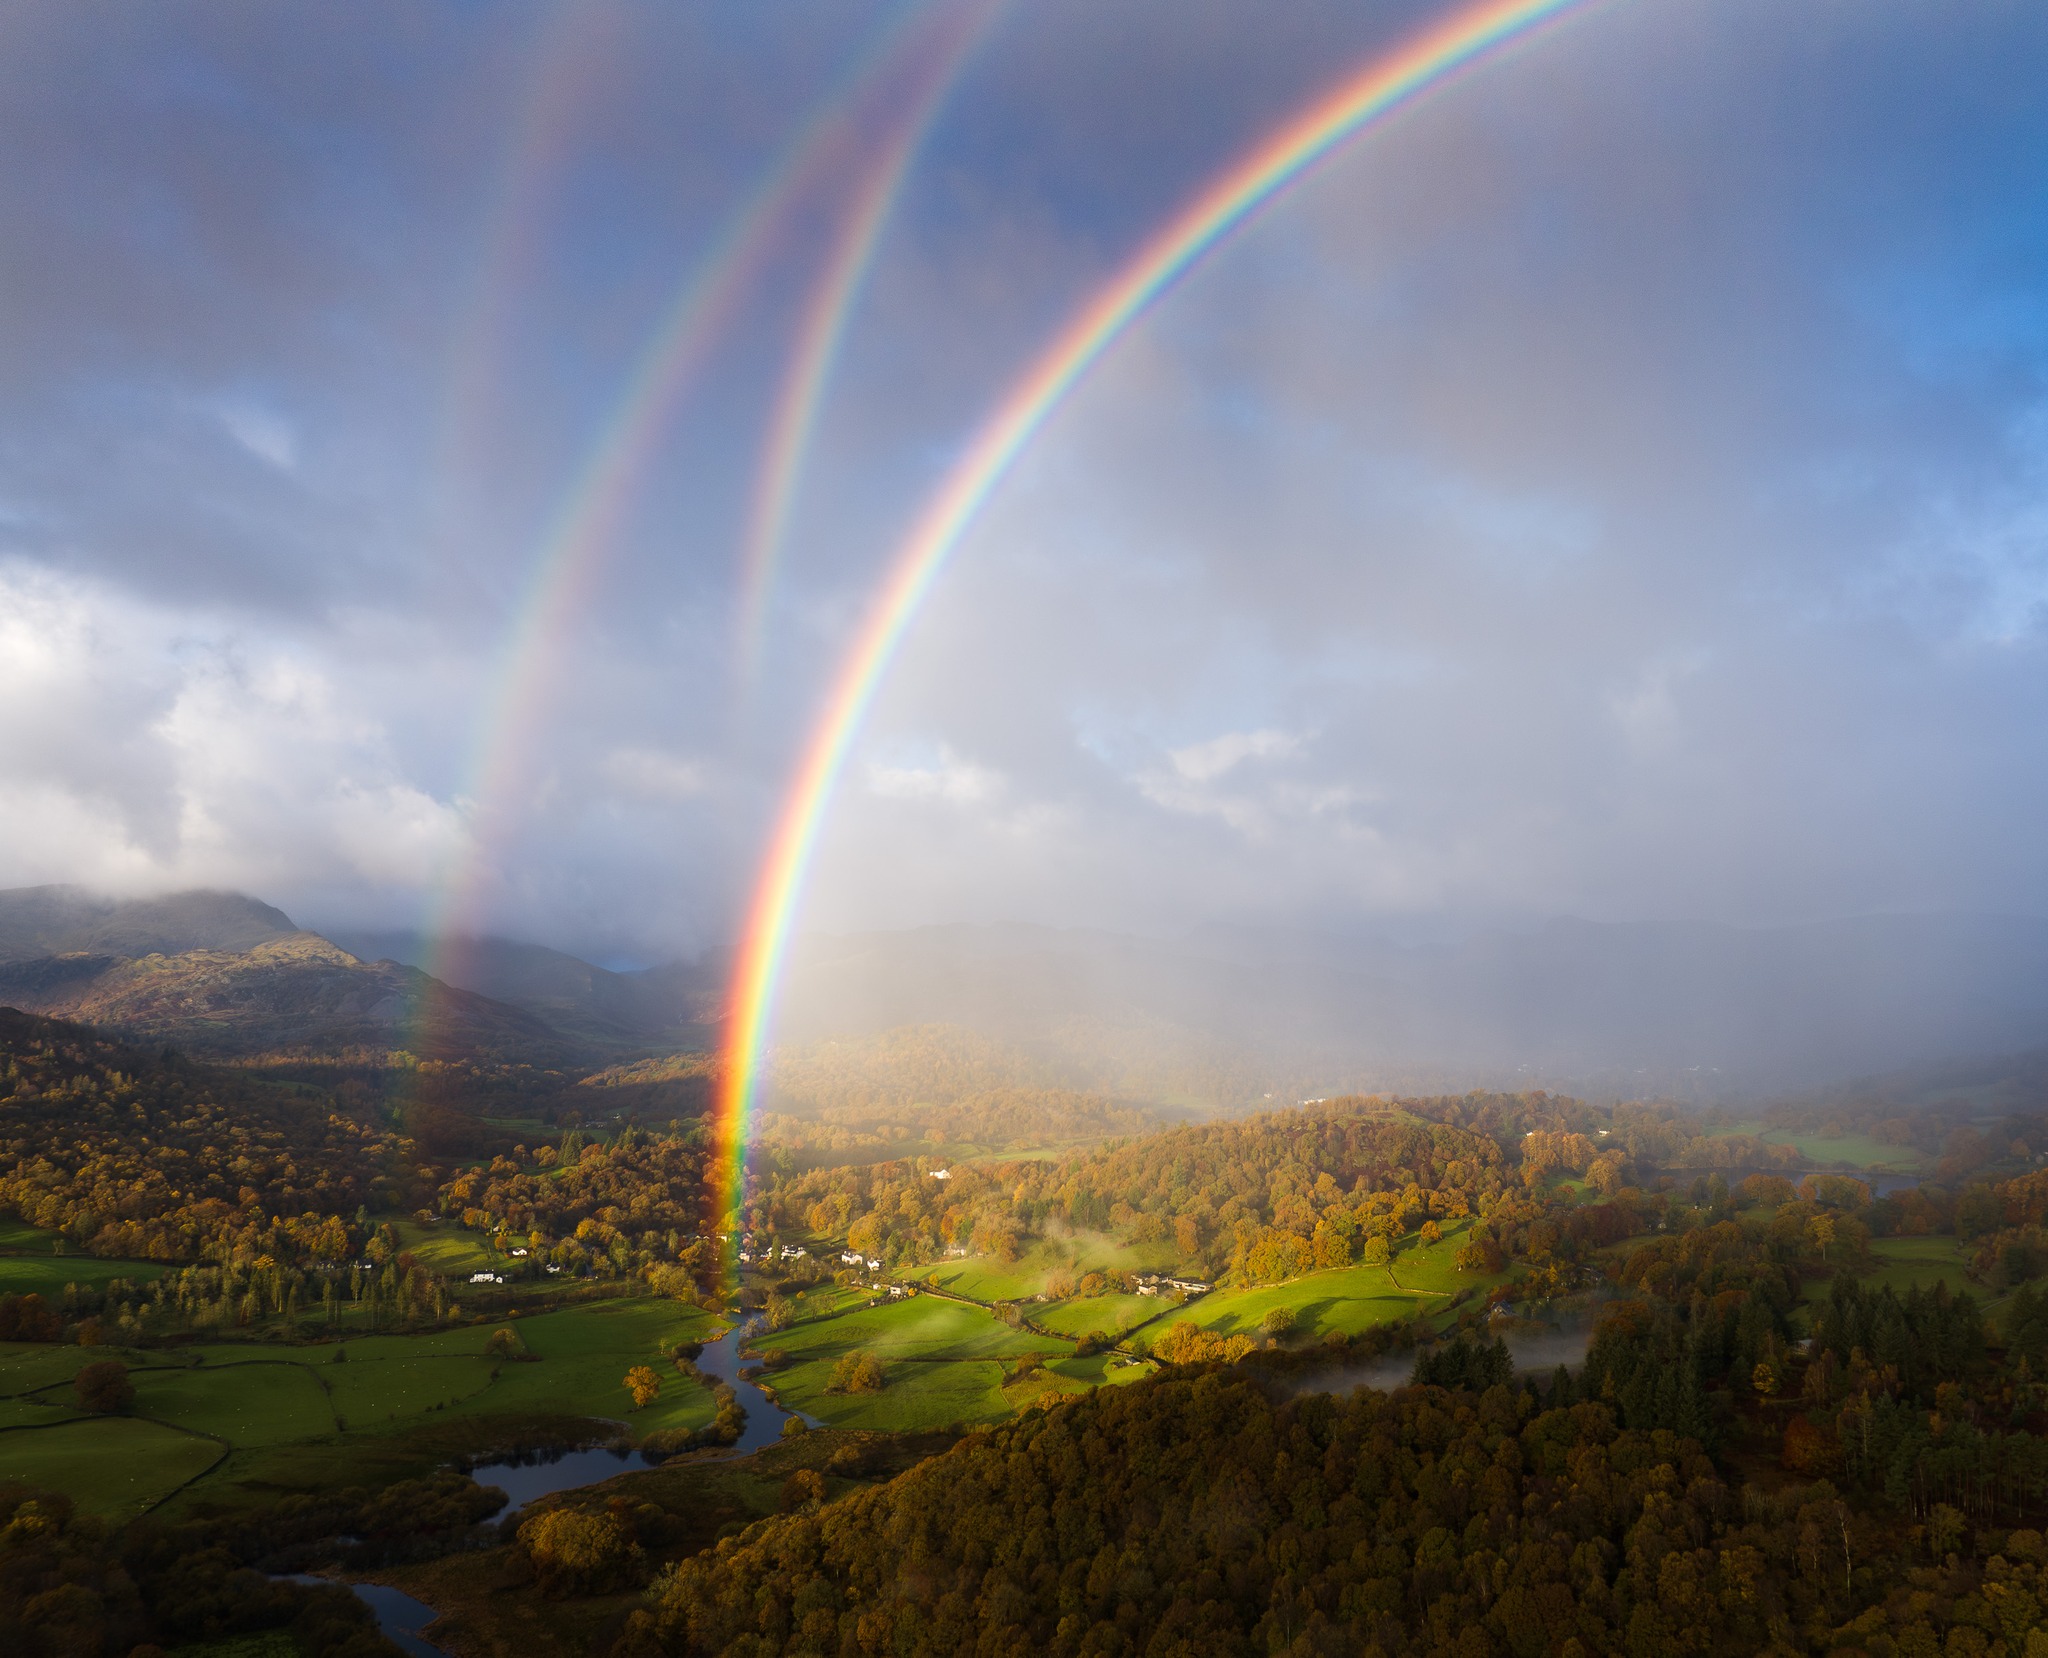 4 Rainbows - captured over United Kingdom